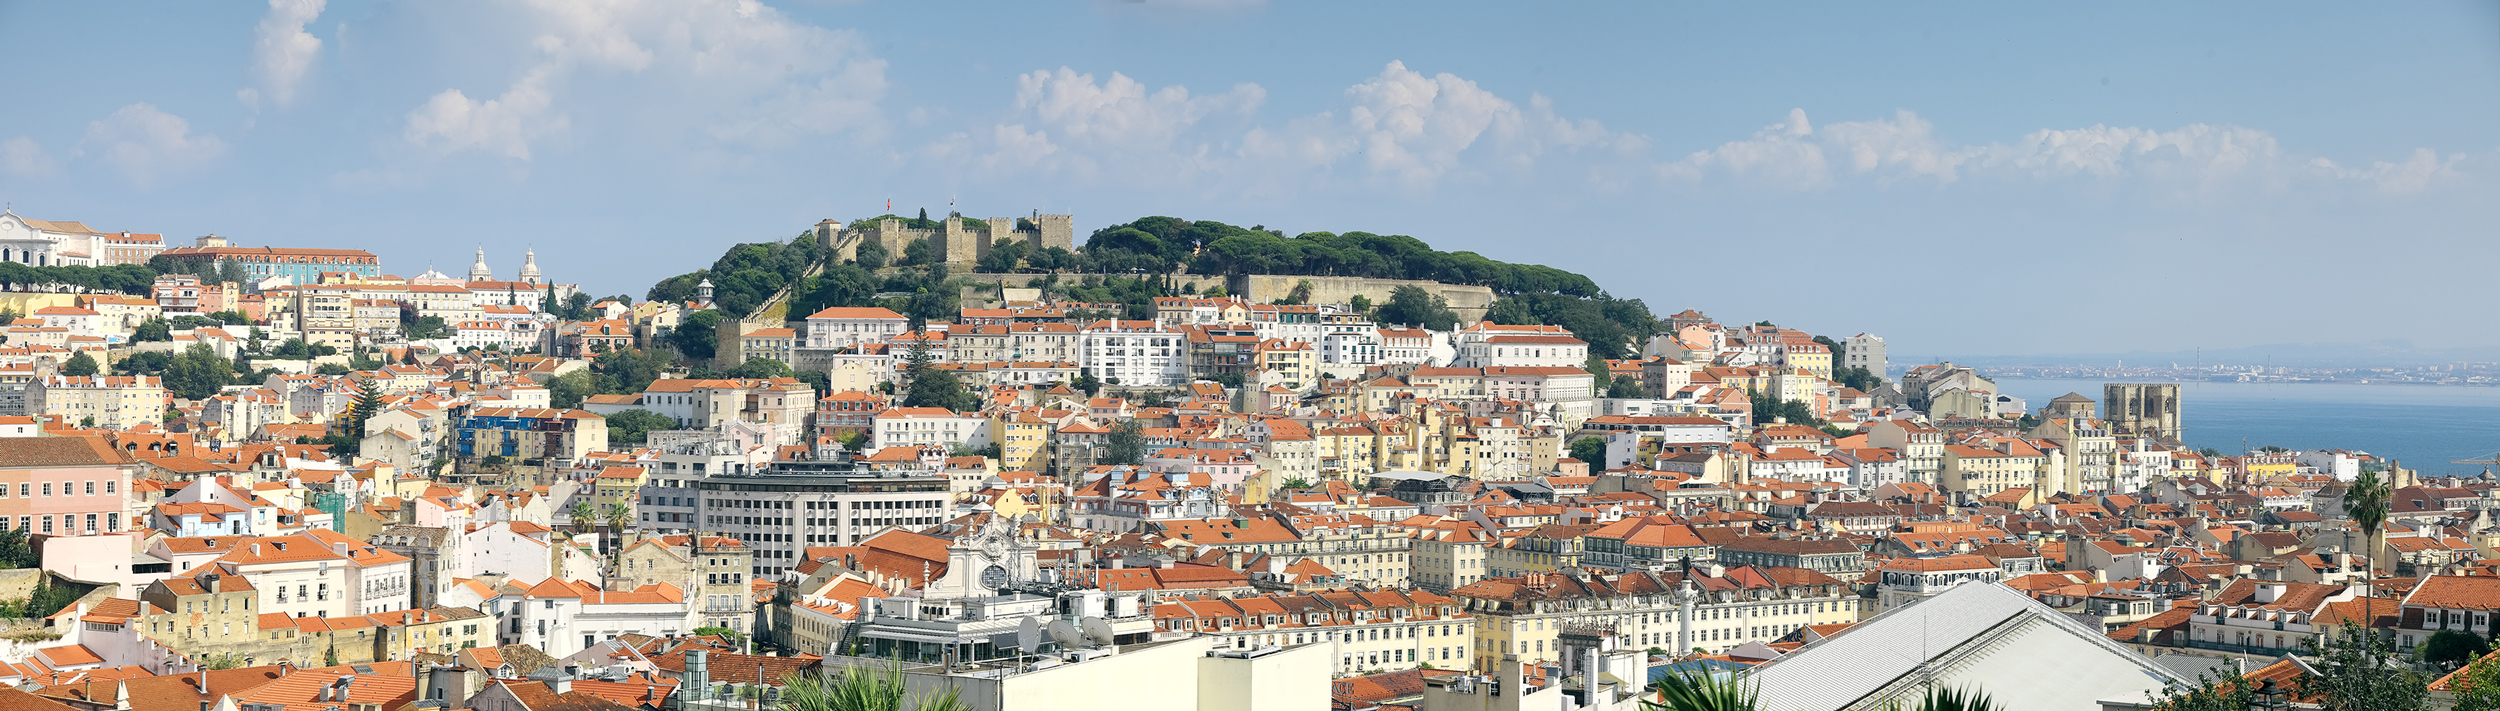 Vista sul castello di São Jorge  | © Turismo de Lisboa |